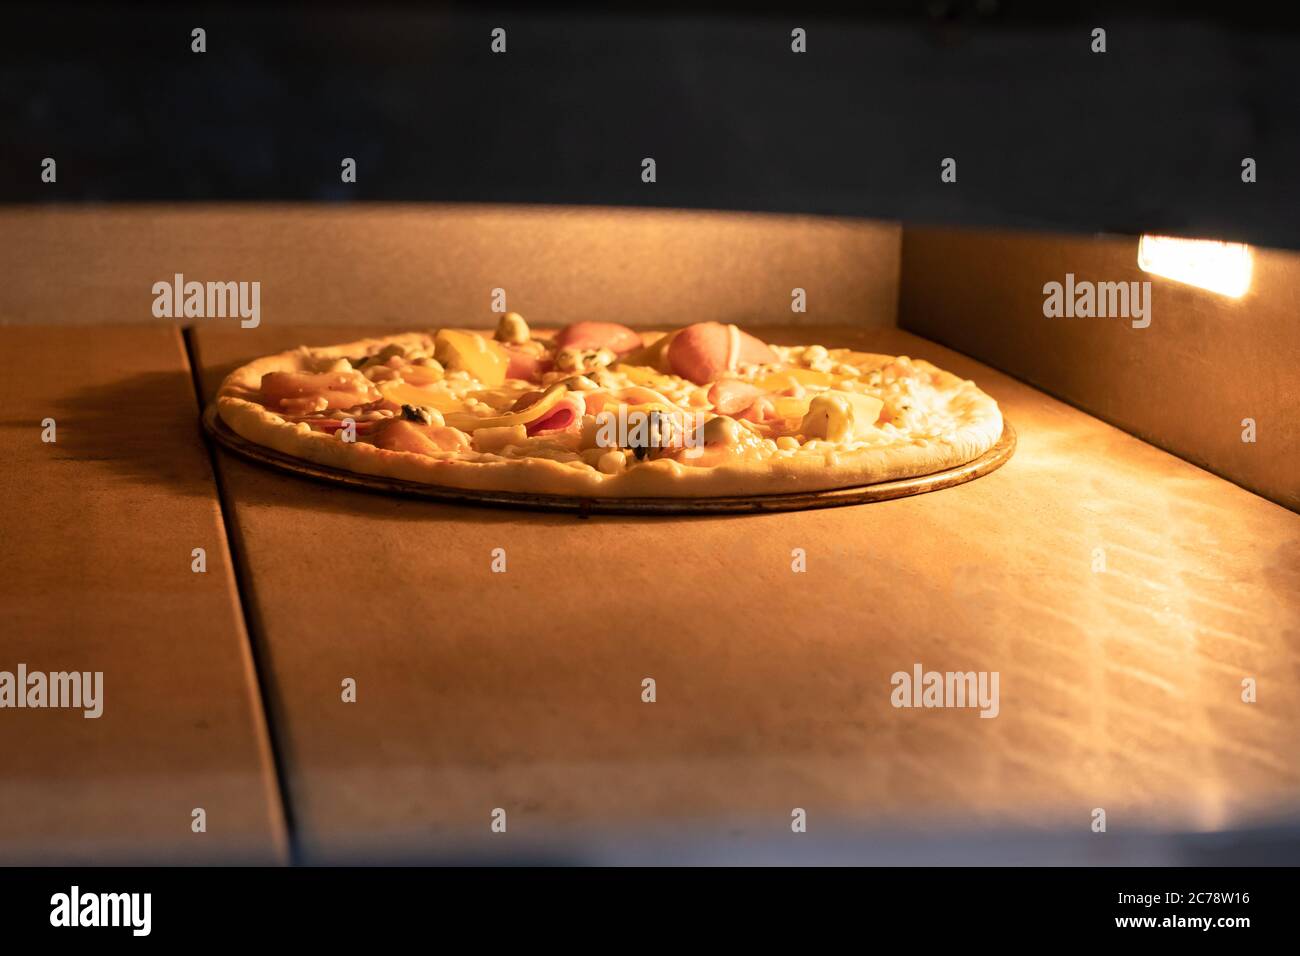 La pizza viene cotta nel forno. Il processo di cottura della pizza italiana, forno, alta temperatura. Pizza con pollo, pomodori e formaggio Foto Stock